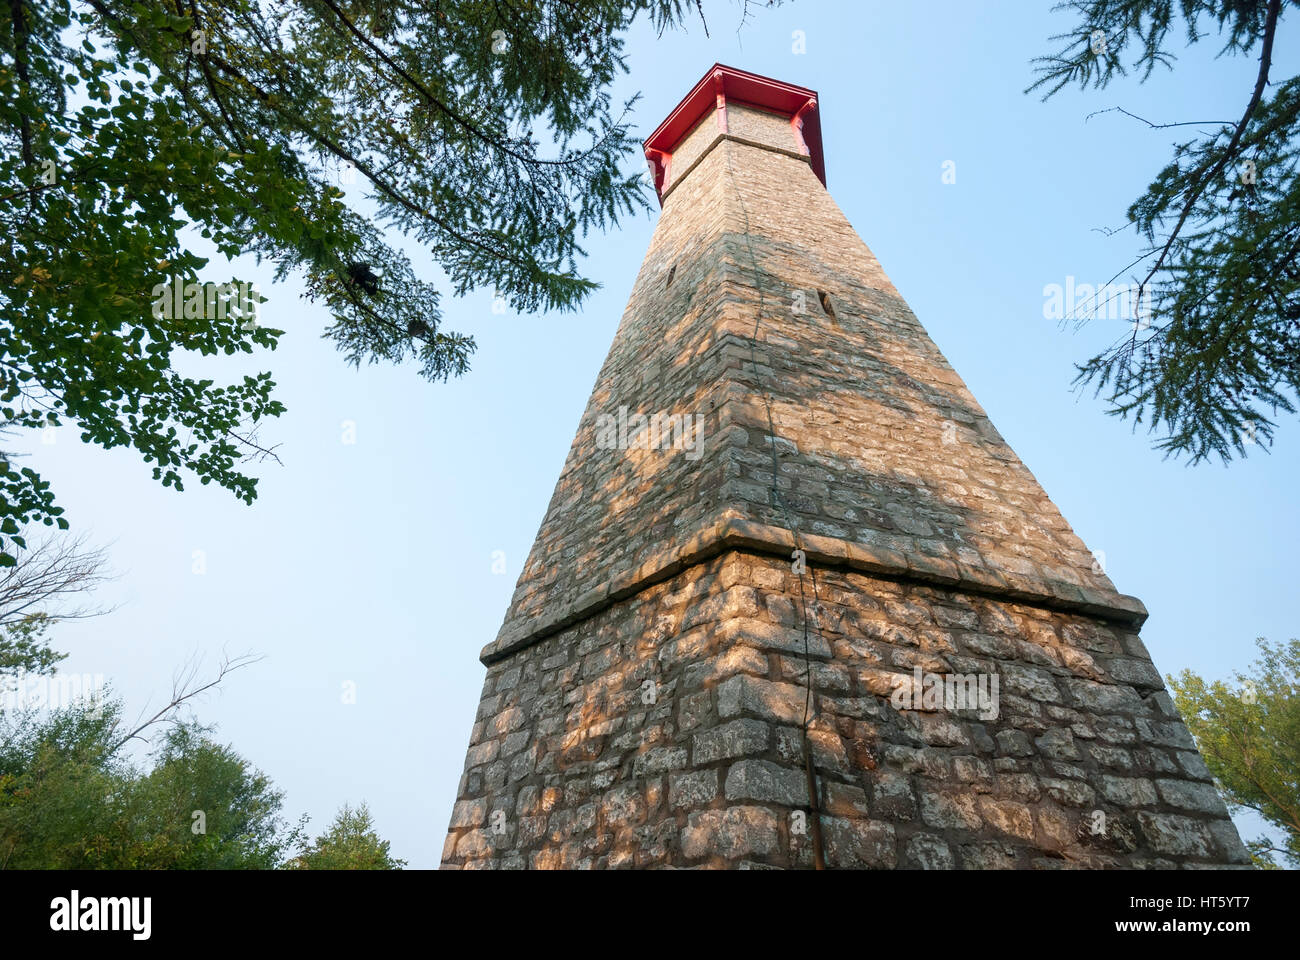 Toronto Ontario Canada - lo storico Gibralter point lighthouse costruita sulle isole di Toronto nel 1808 è uno dei primi sui Grandi Laghi. Foto Stock